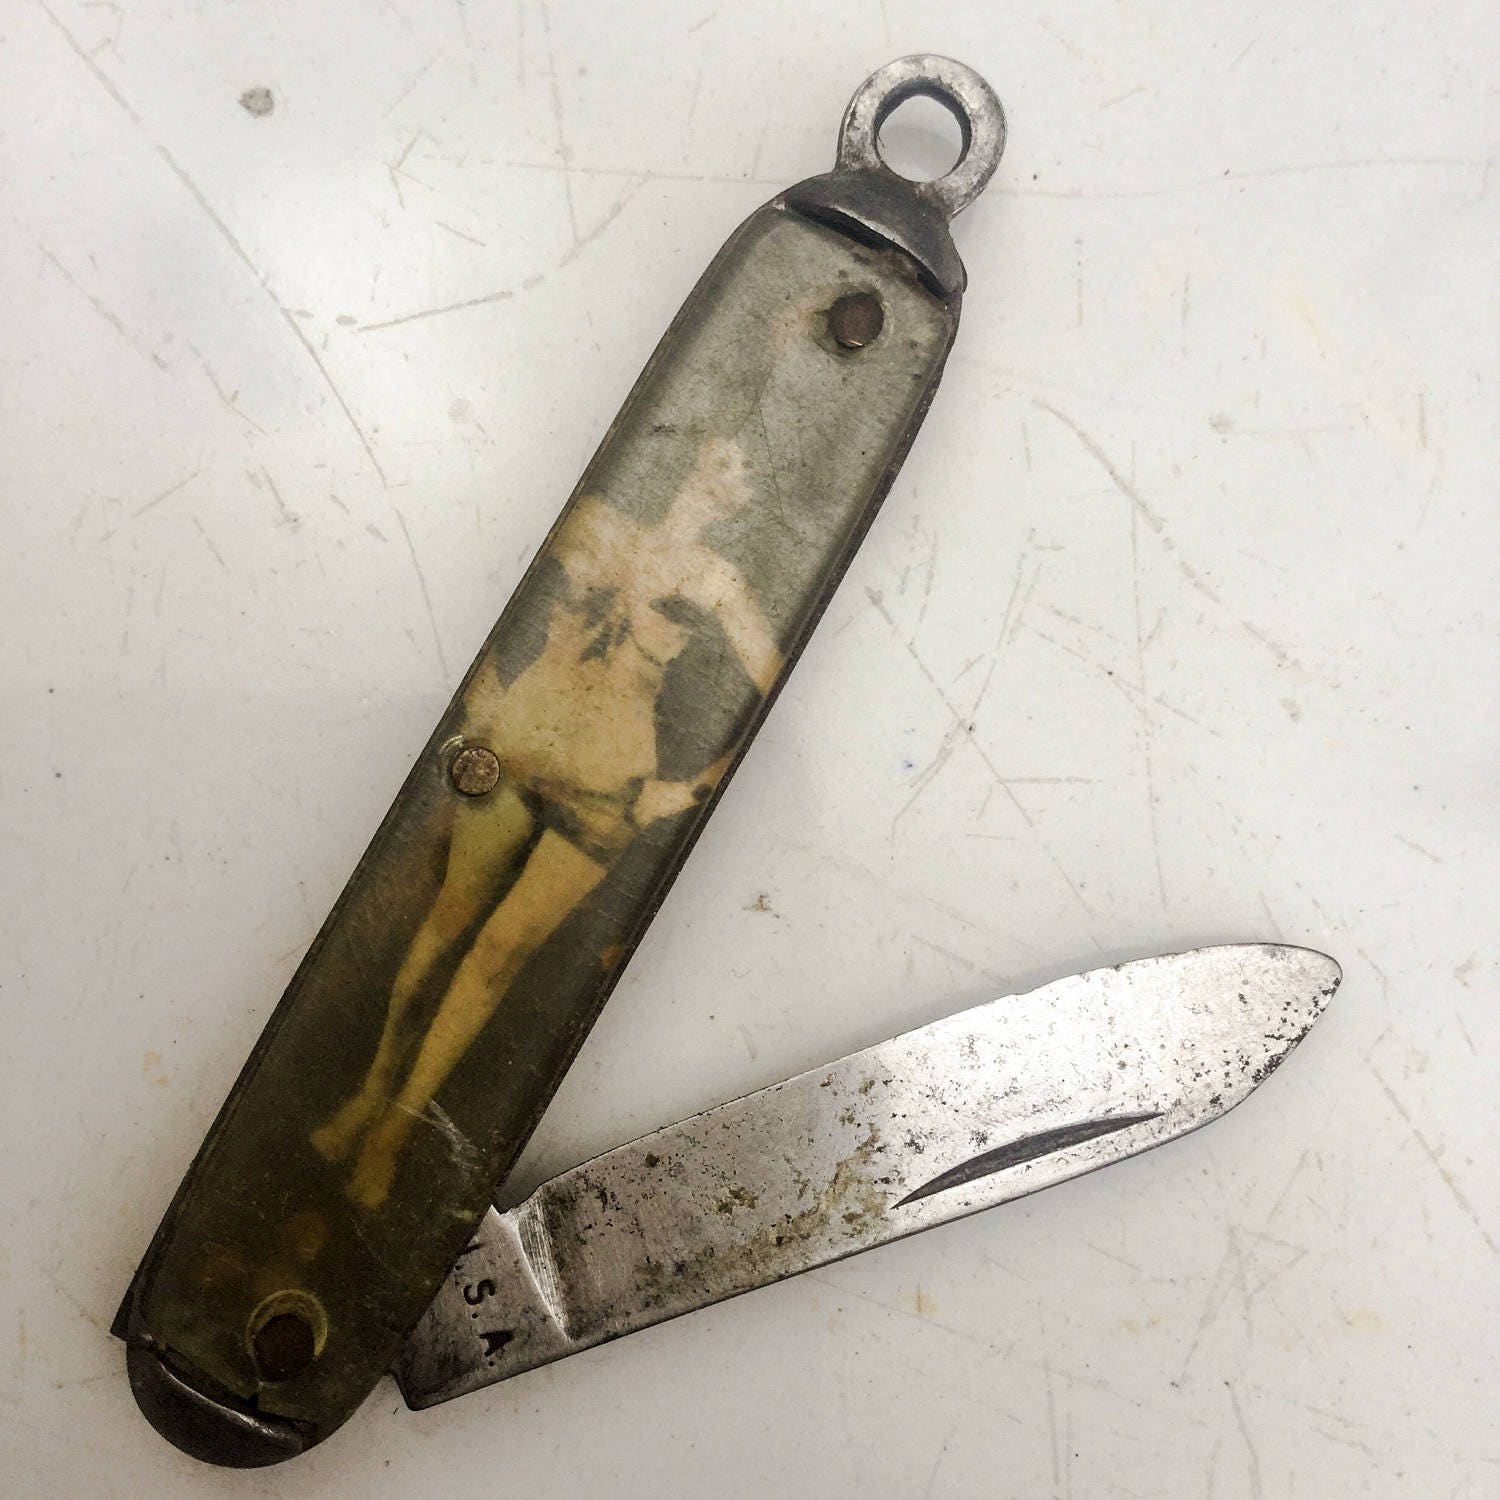 Nudie Girl Vintage Knife Fob Pin Up Pocket Knife Pendant